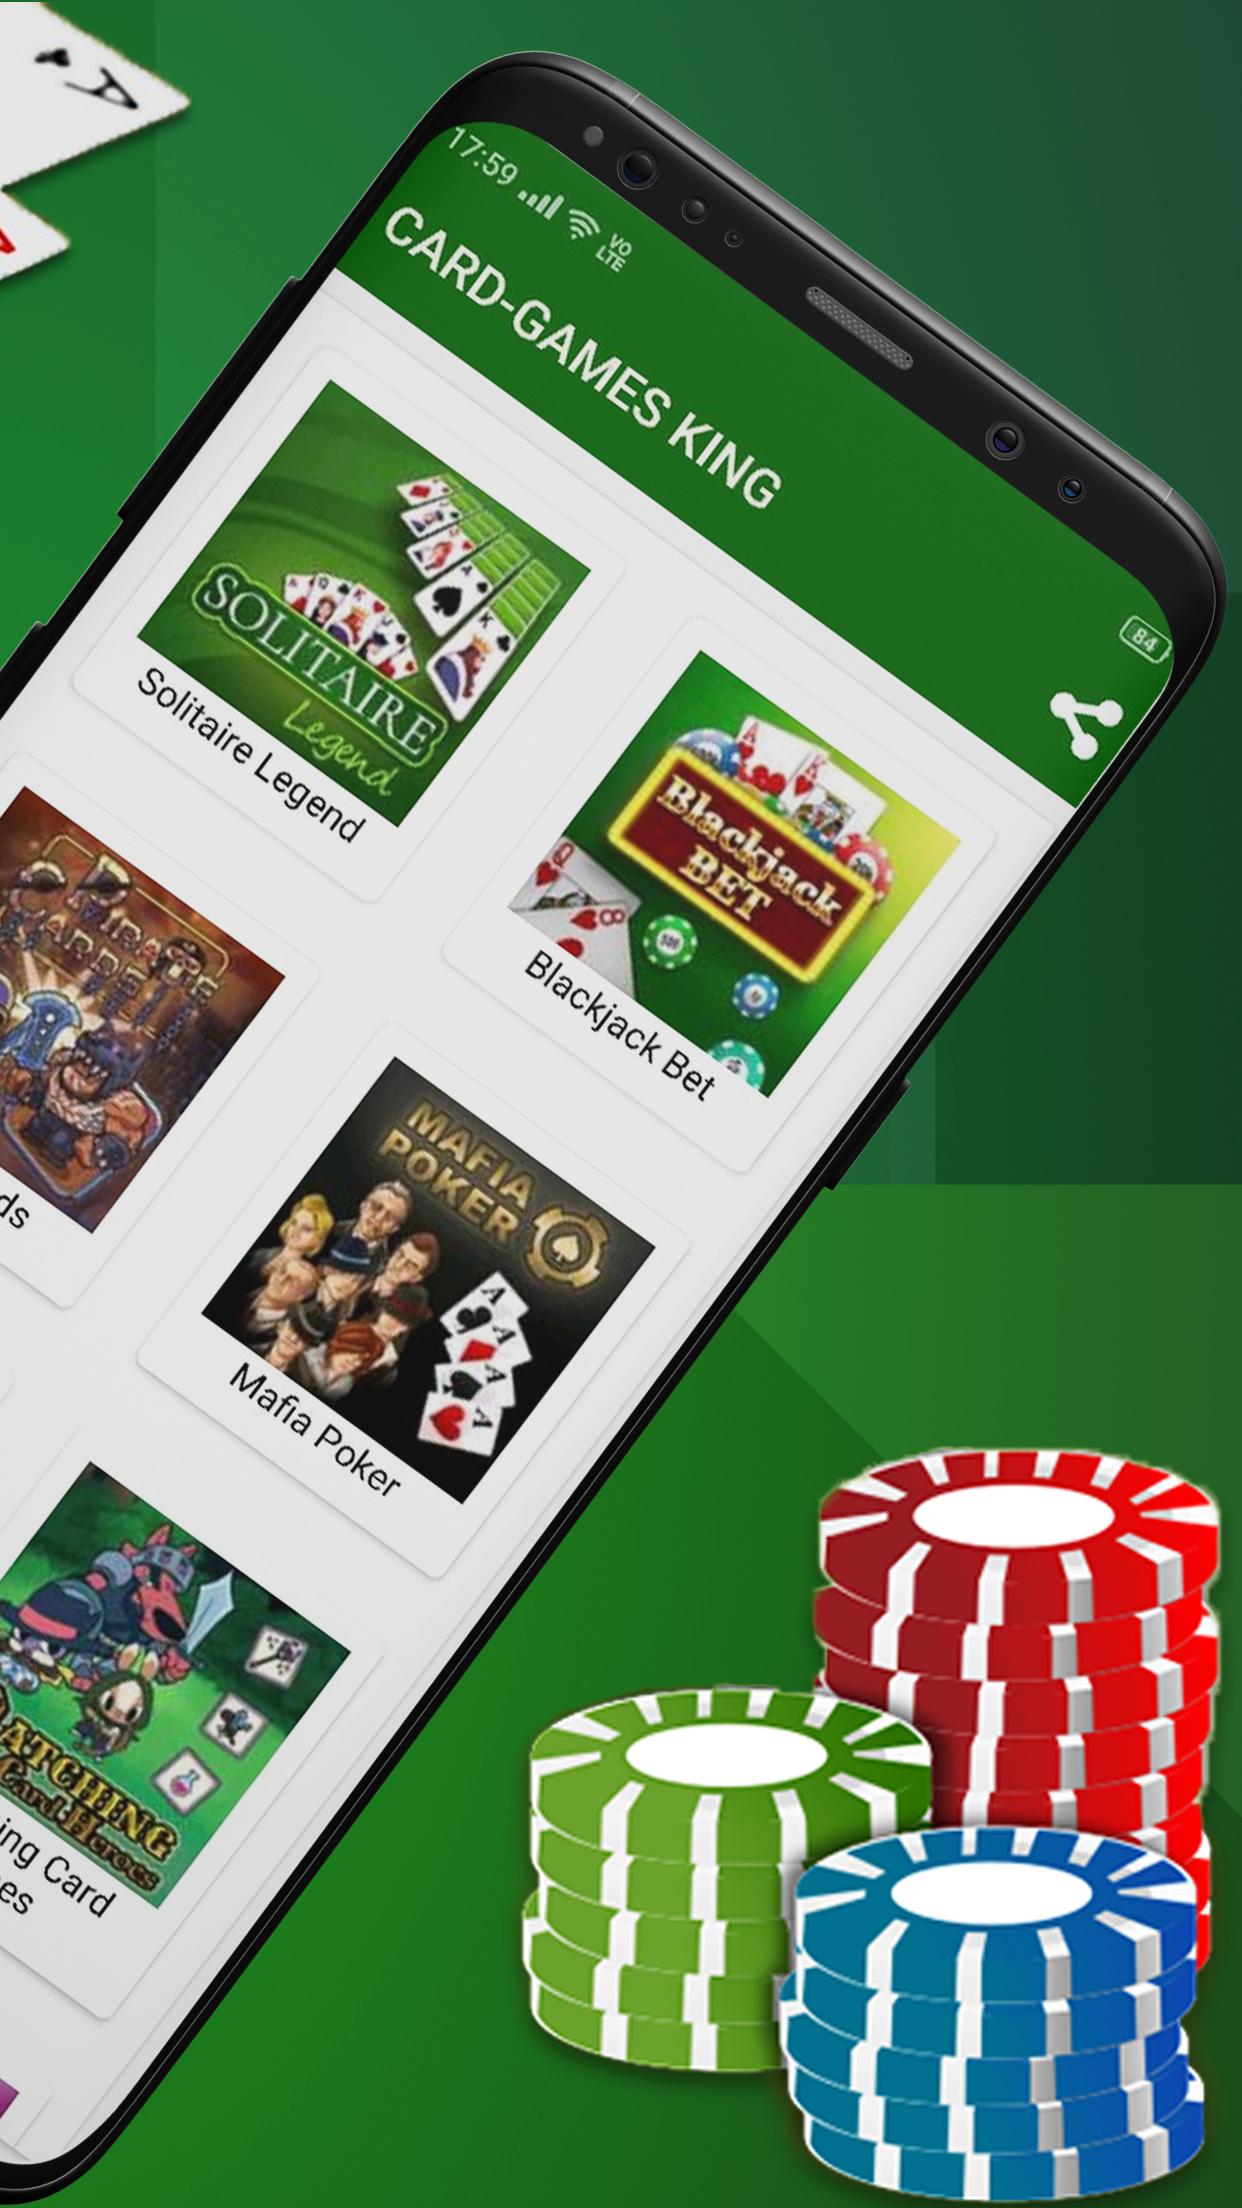 Juegos De Cartas En Linea King Juegos Gratis For Android Apk Download